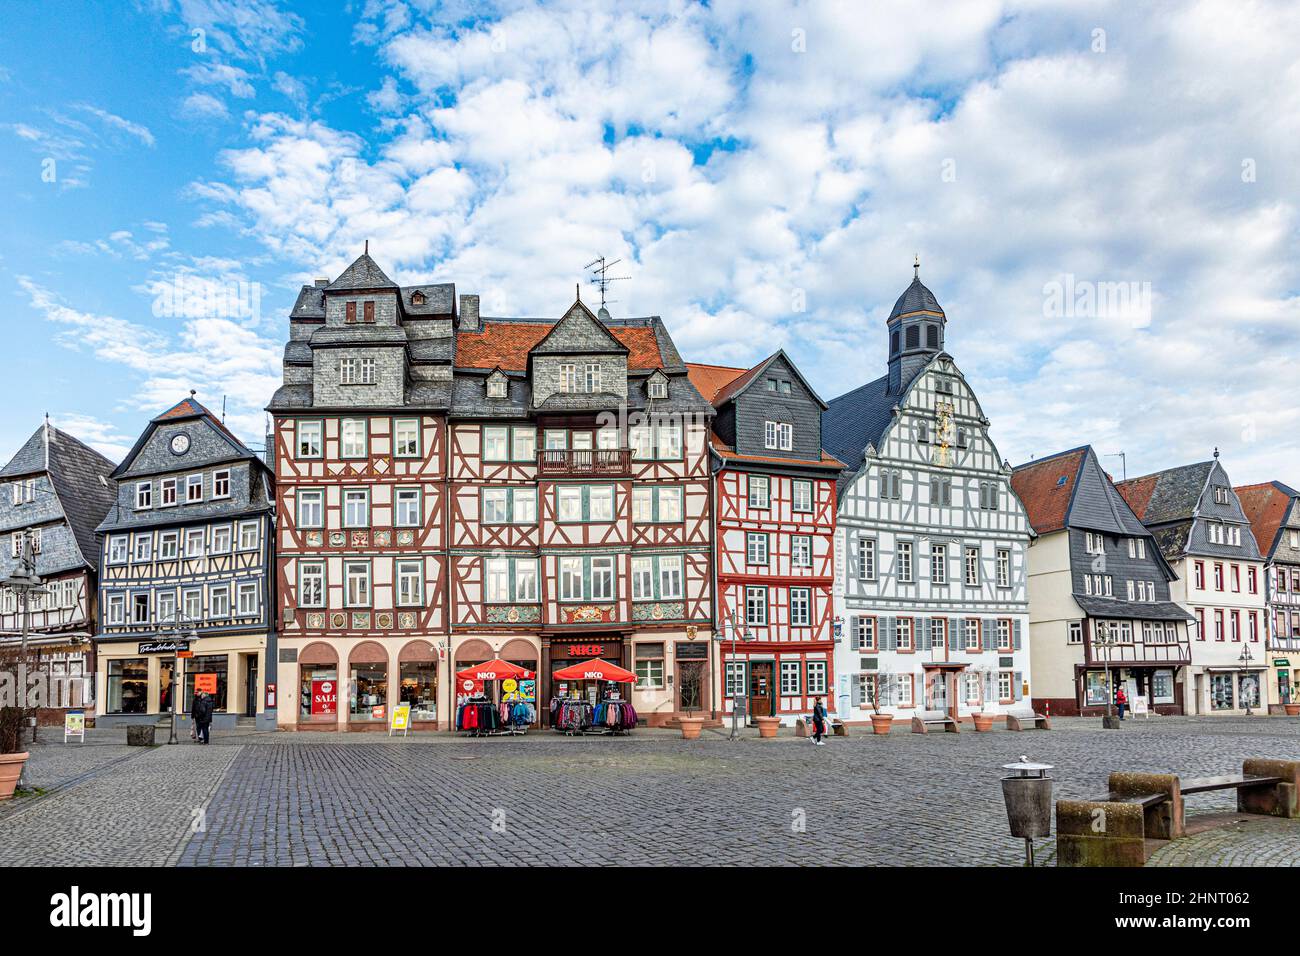 Vue panoramique sur le marché historique de Butzbach, Hesse, Allemagne Banque D'Images